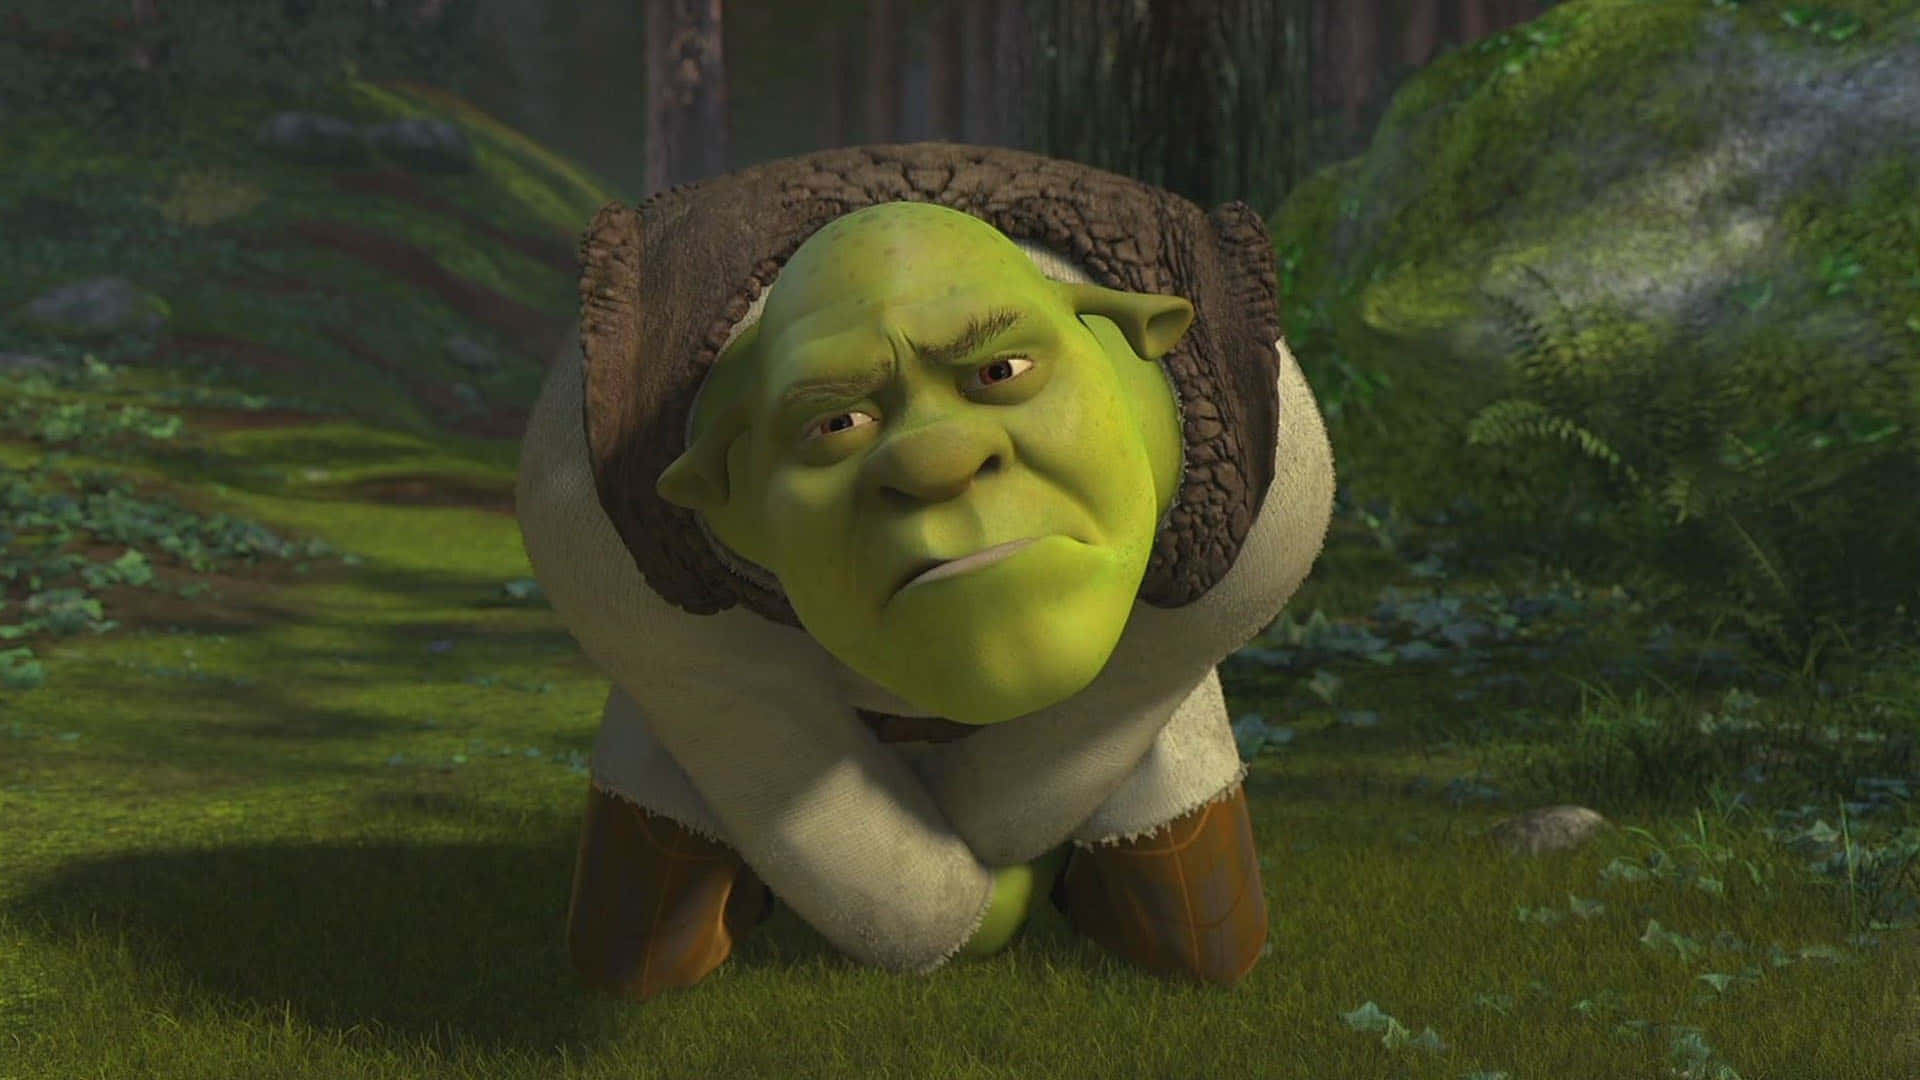 ornery ogre named Shrek